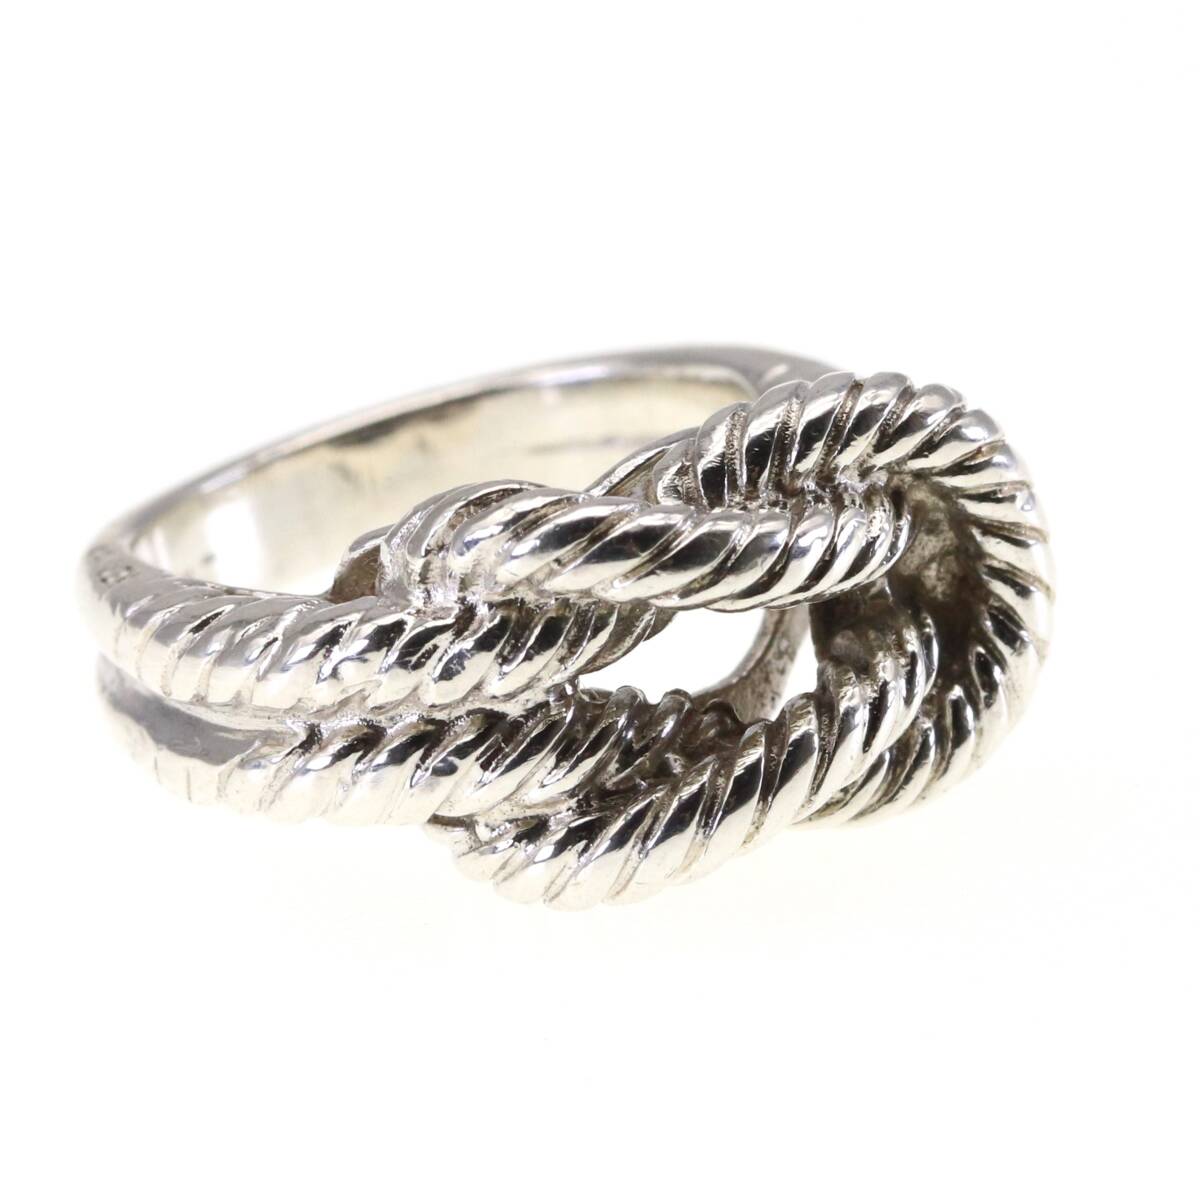  редкий Vintage Hermes кольцо серебряный 925 кручение трос узел HERMESo-tienn